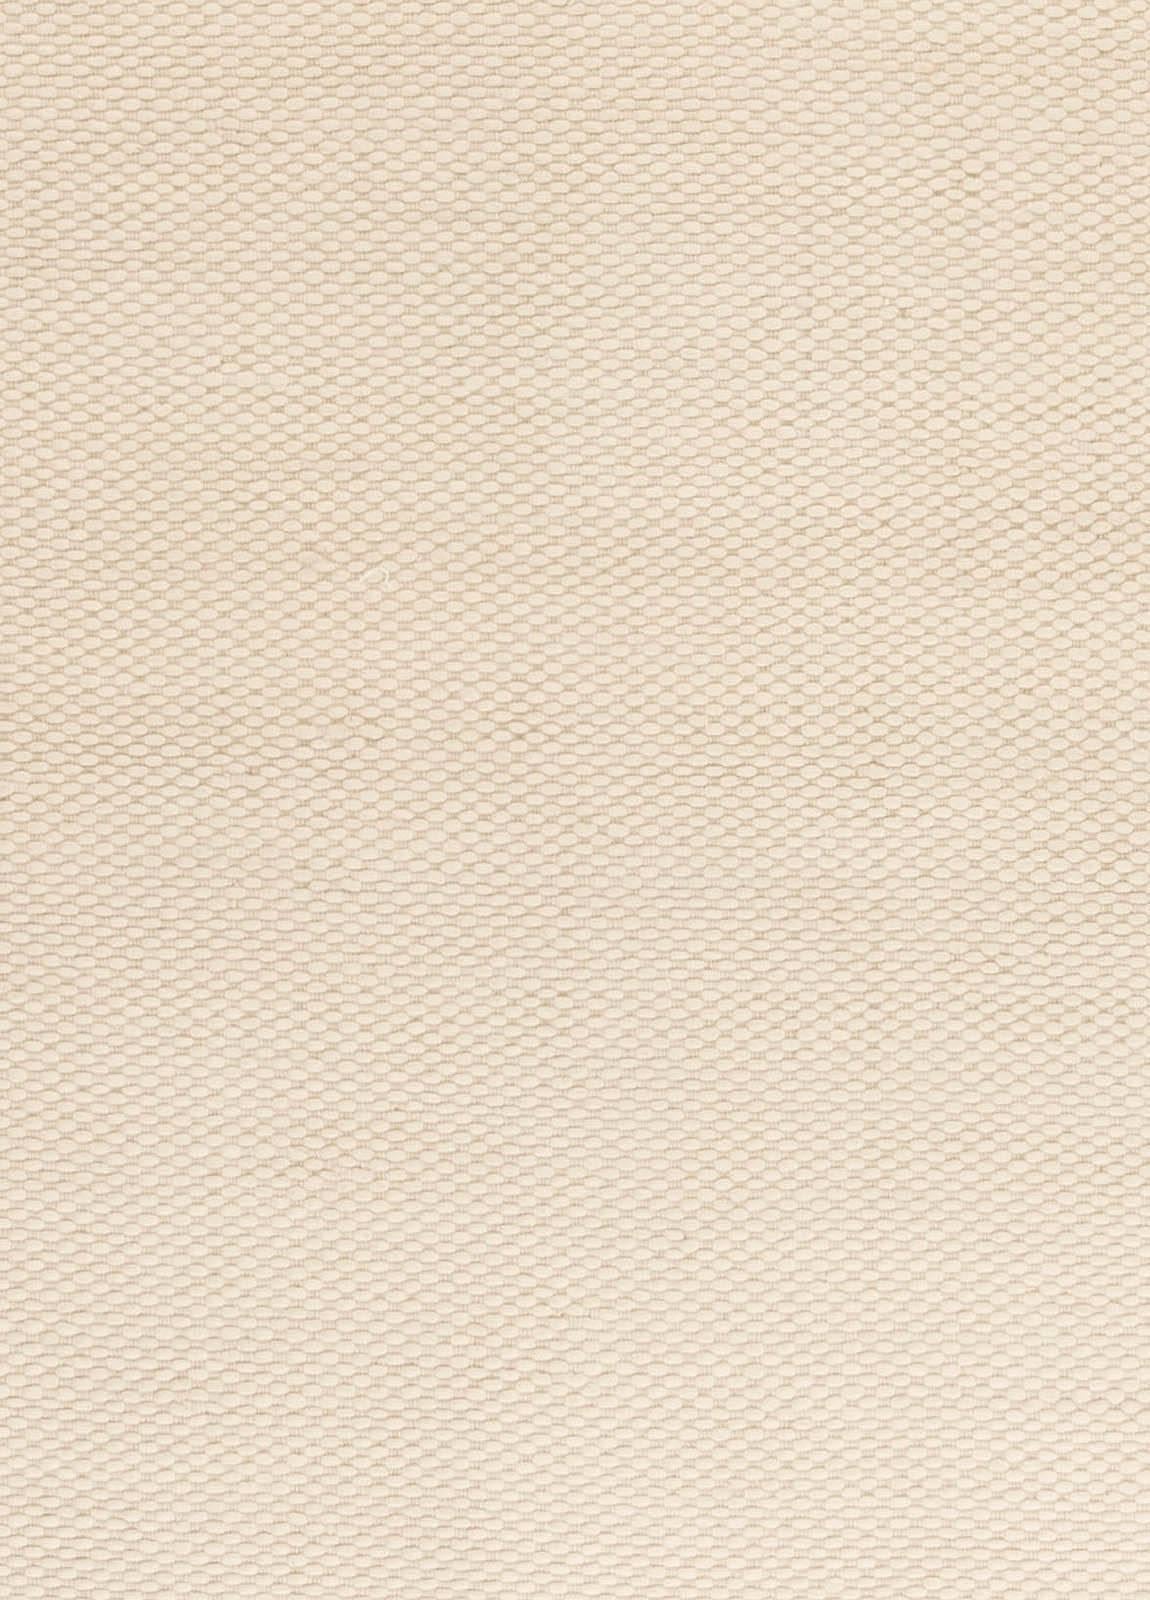 Tapis contemporain unique en son genre, beige, tissé à plat, de Doris Leslie Blau
Taille : 14'7